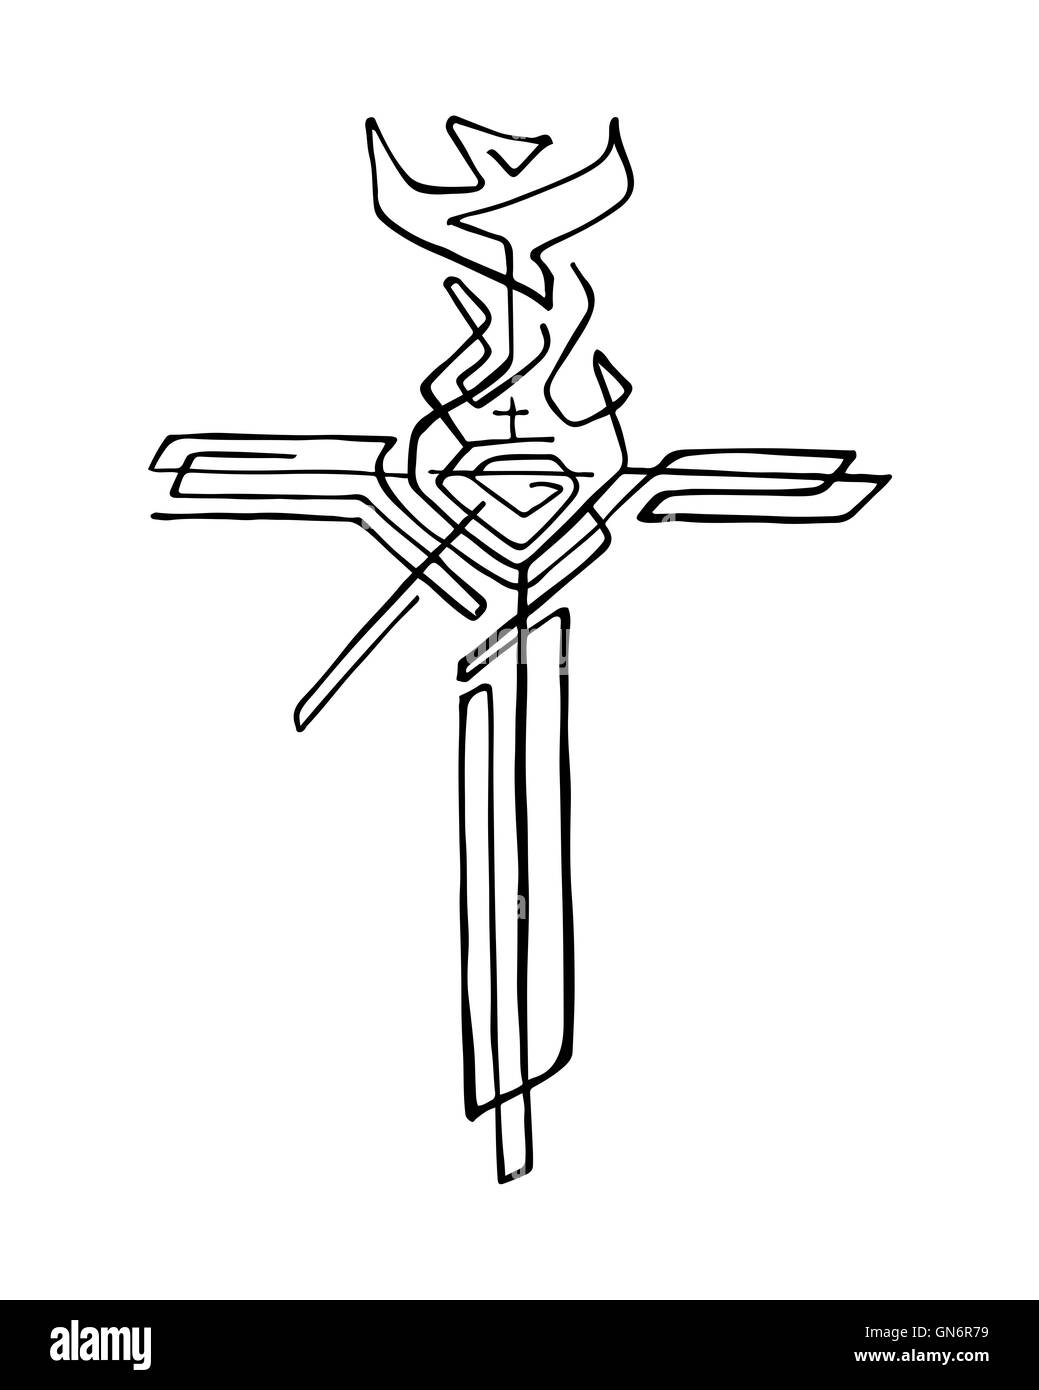 Handgezeichnete Illustrationen oder Zeichnung aus einem religiösen Kreuz mit verschiedenen Symbolen Stockfoto